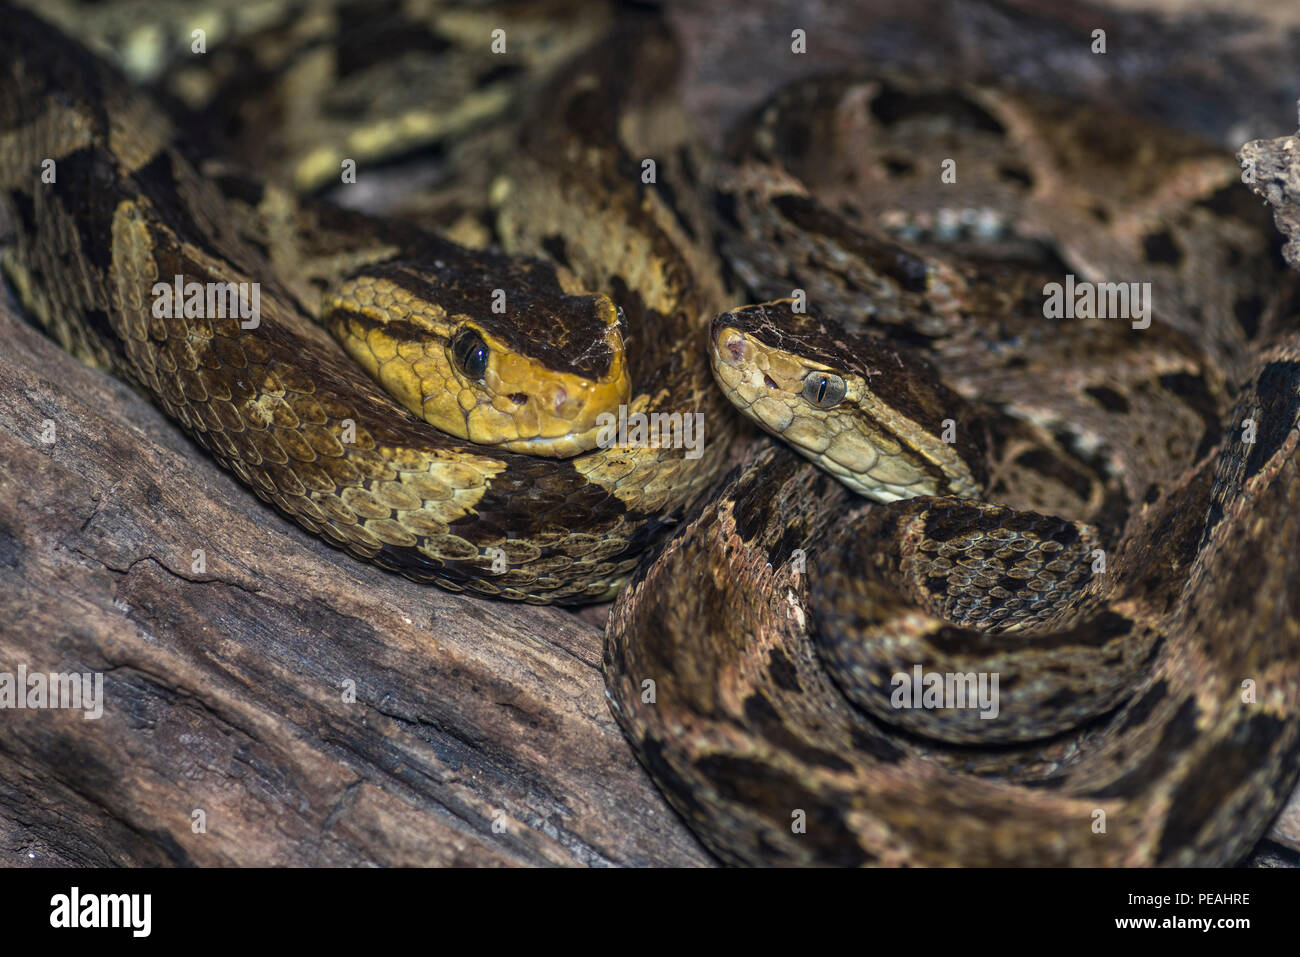 2 Bothrops asper o anche chiamato fer de lance serpenti immagine presa in Panama Foto Stock